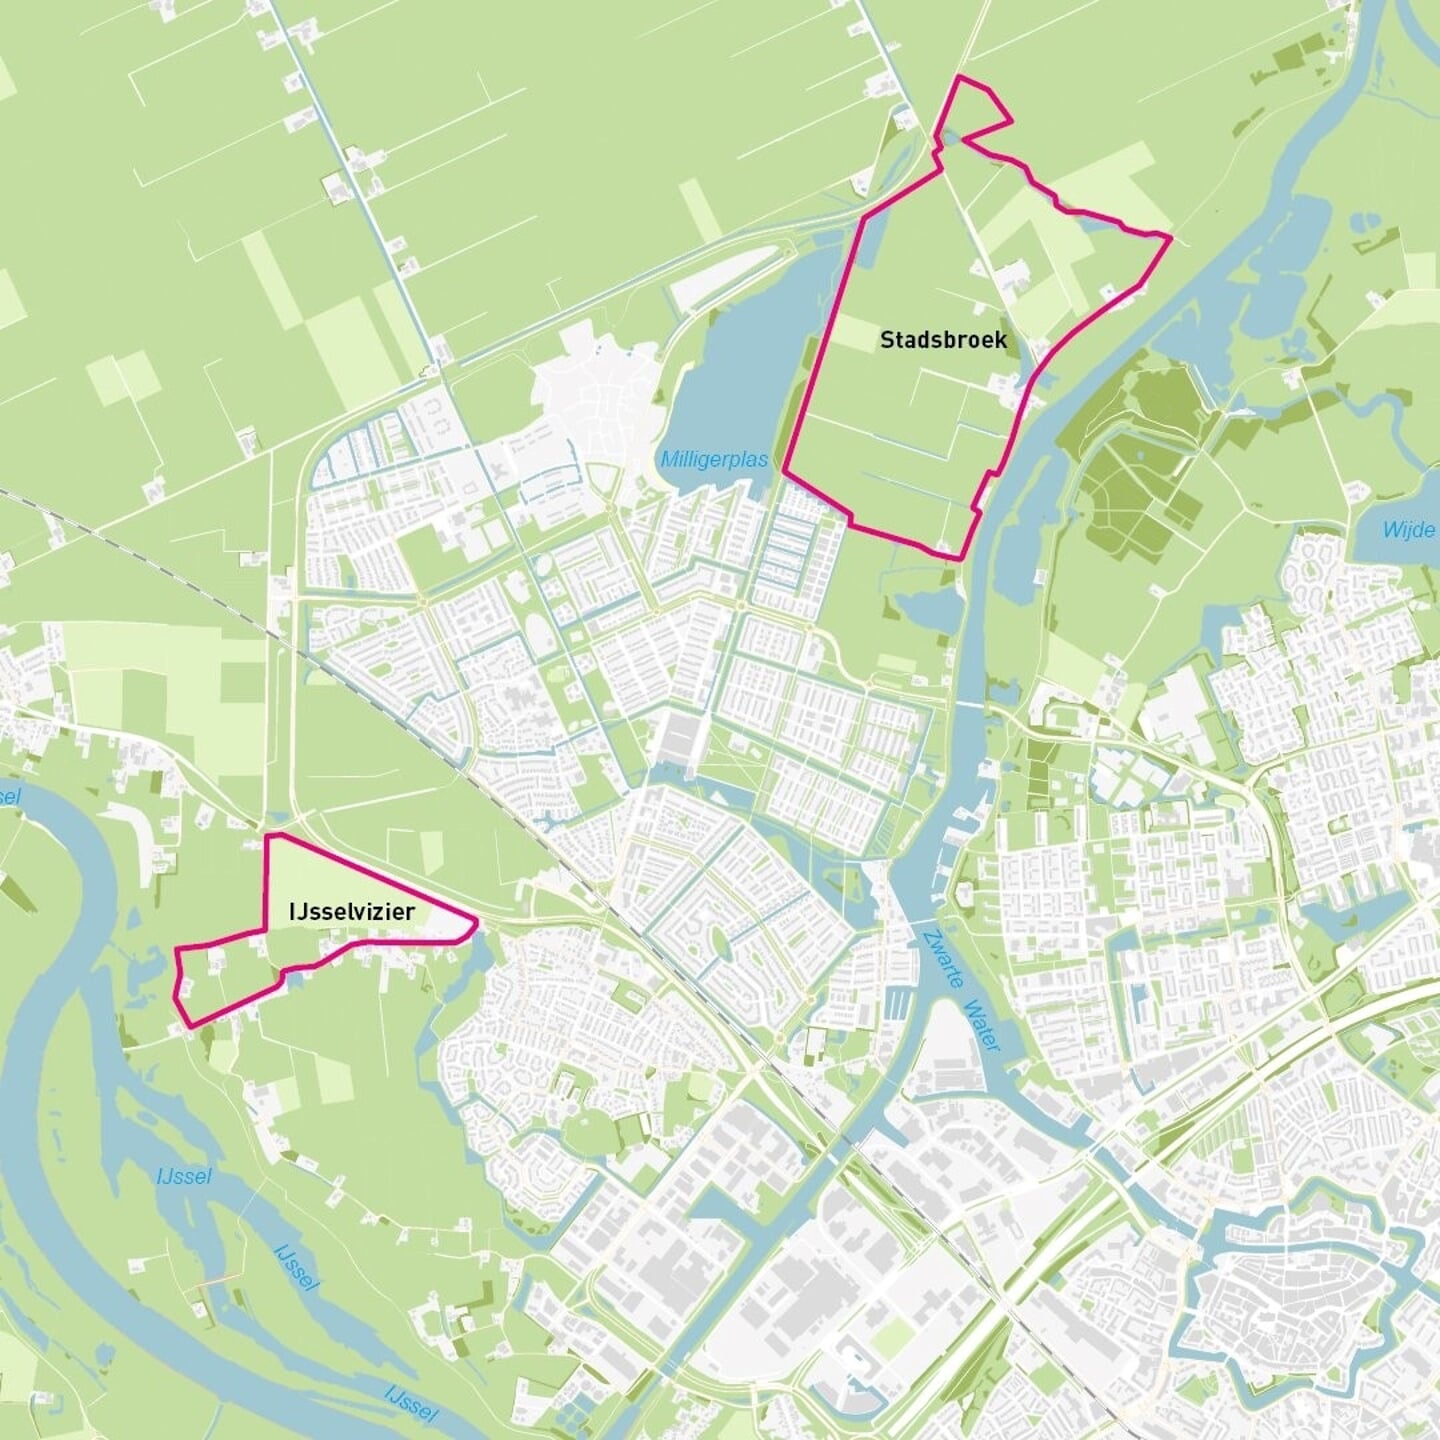 Locatiekaart waar de gebieden Stadsbroek en IJsselvizier op zijn aangegeven. Stadsbroek ligt boven de wijk Stadshagen. IJsselvizier ligt onder de wijk Stadshagen.